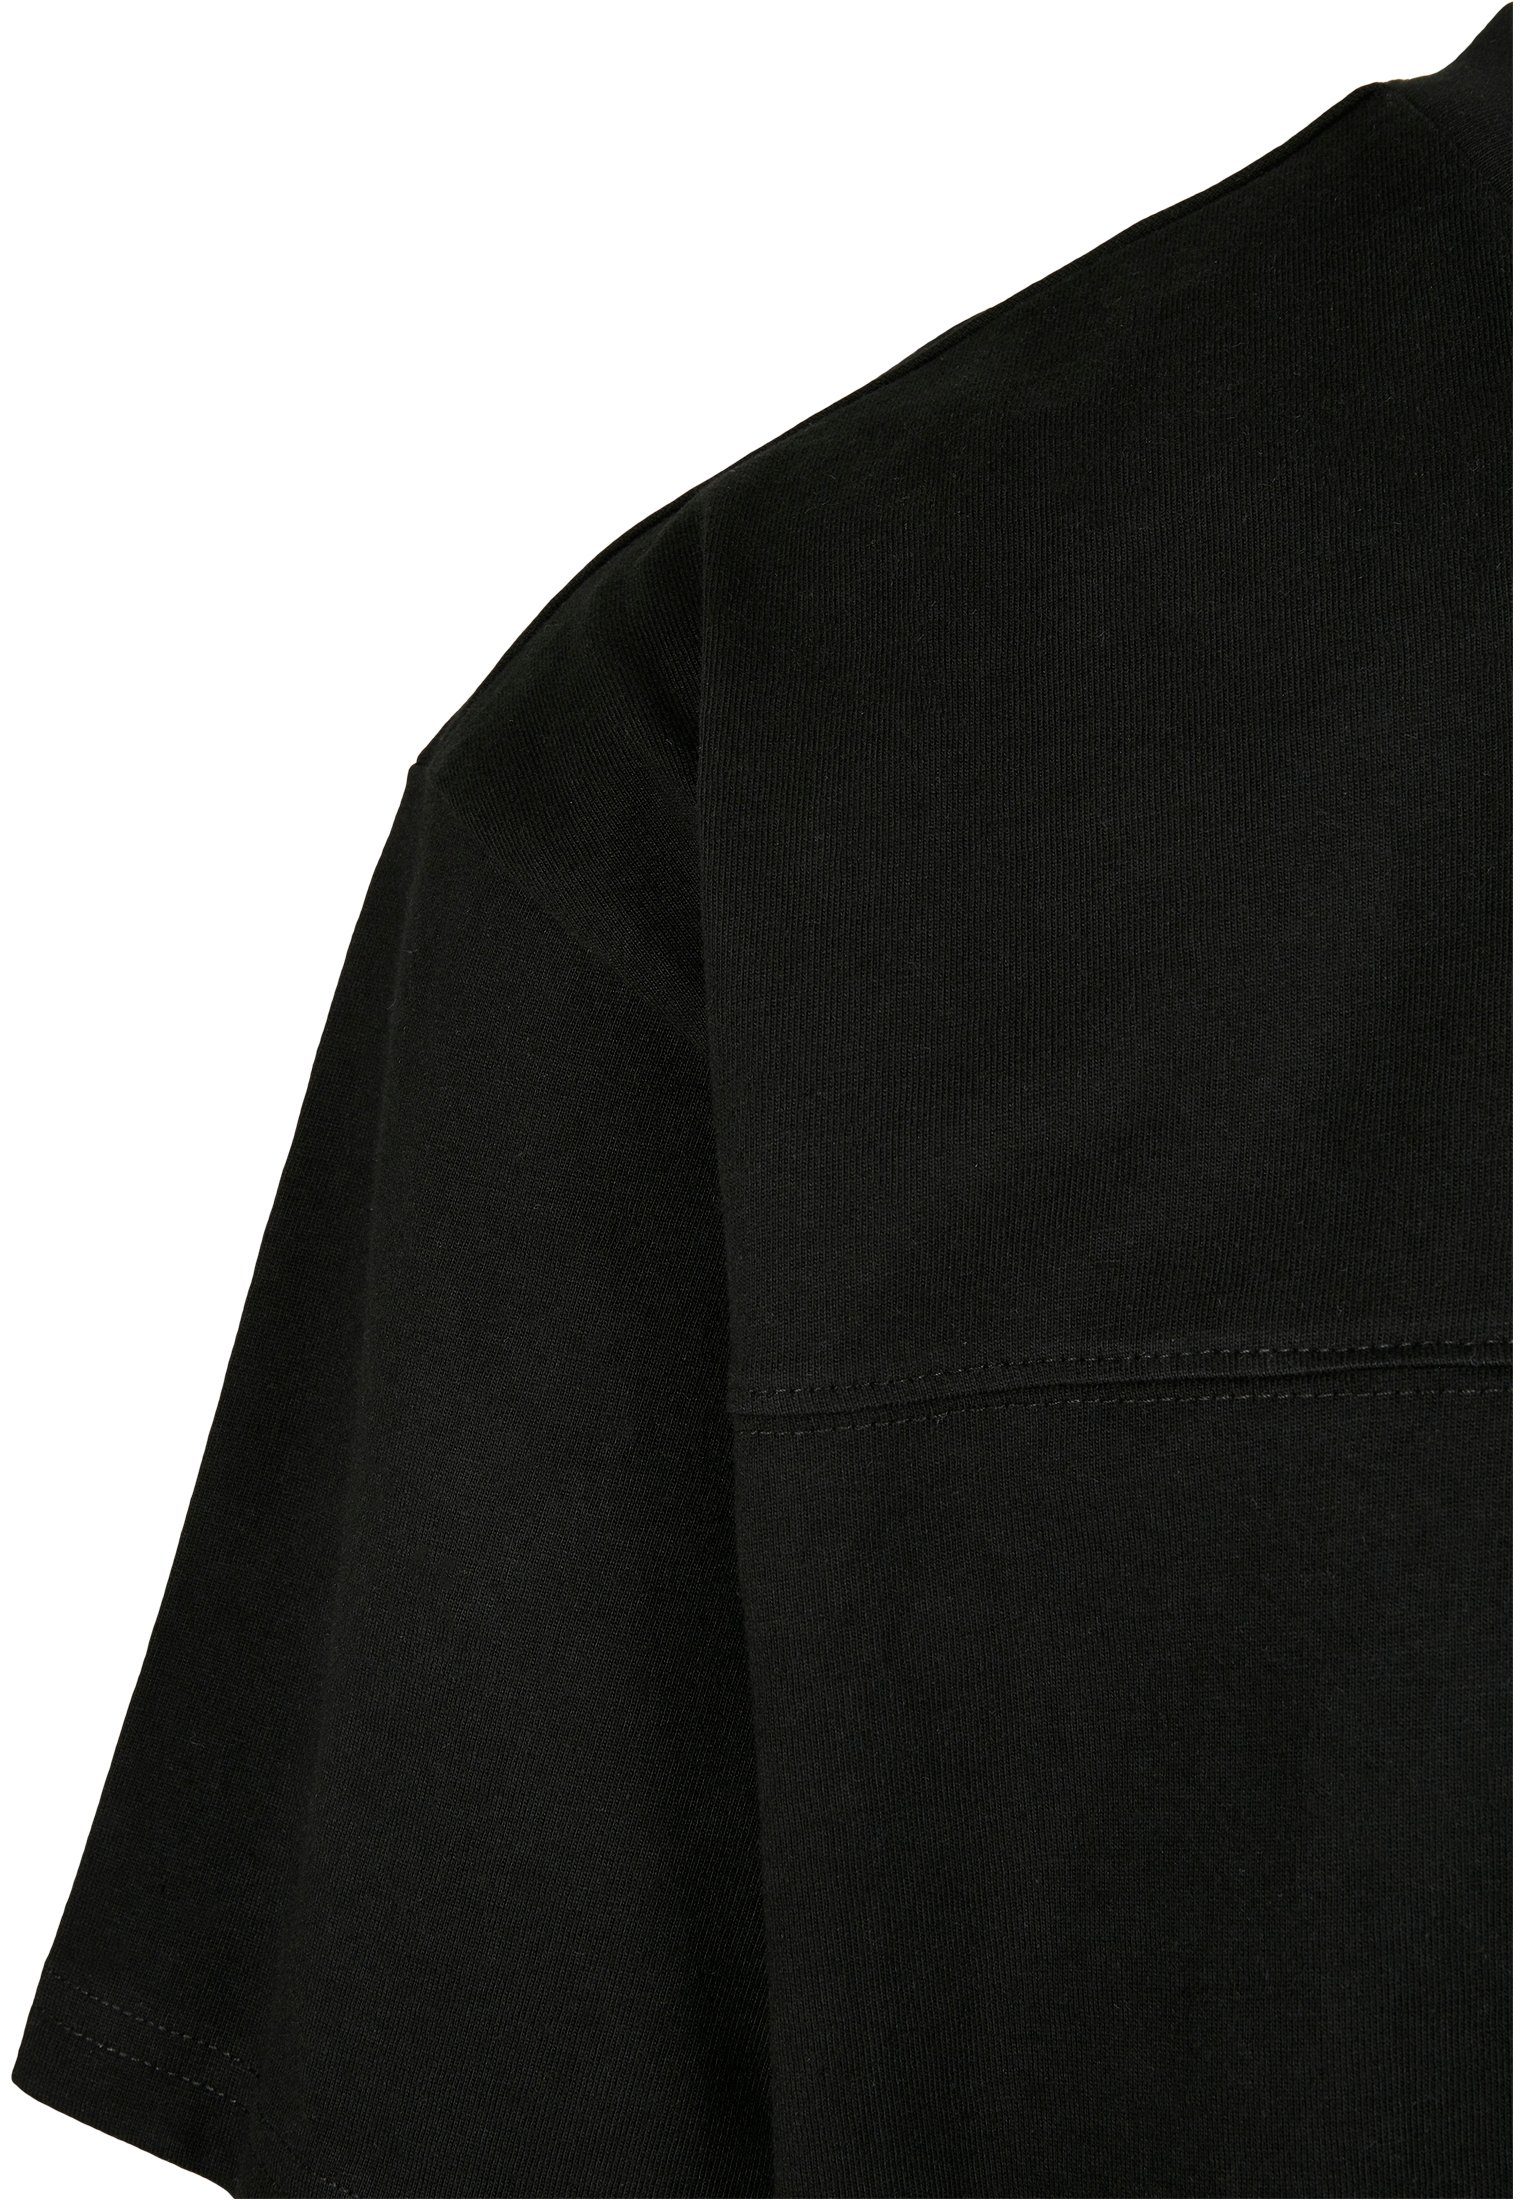 Black Big Print-Shirt Oversized Flap TB4128 URBAN Pocket CLASSICS Tee